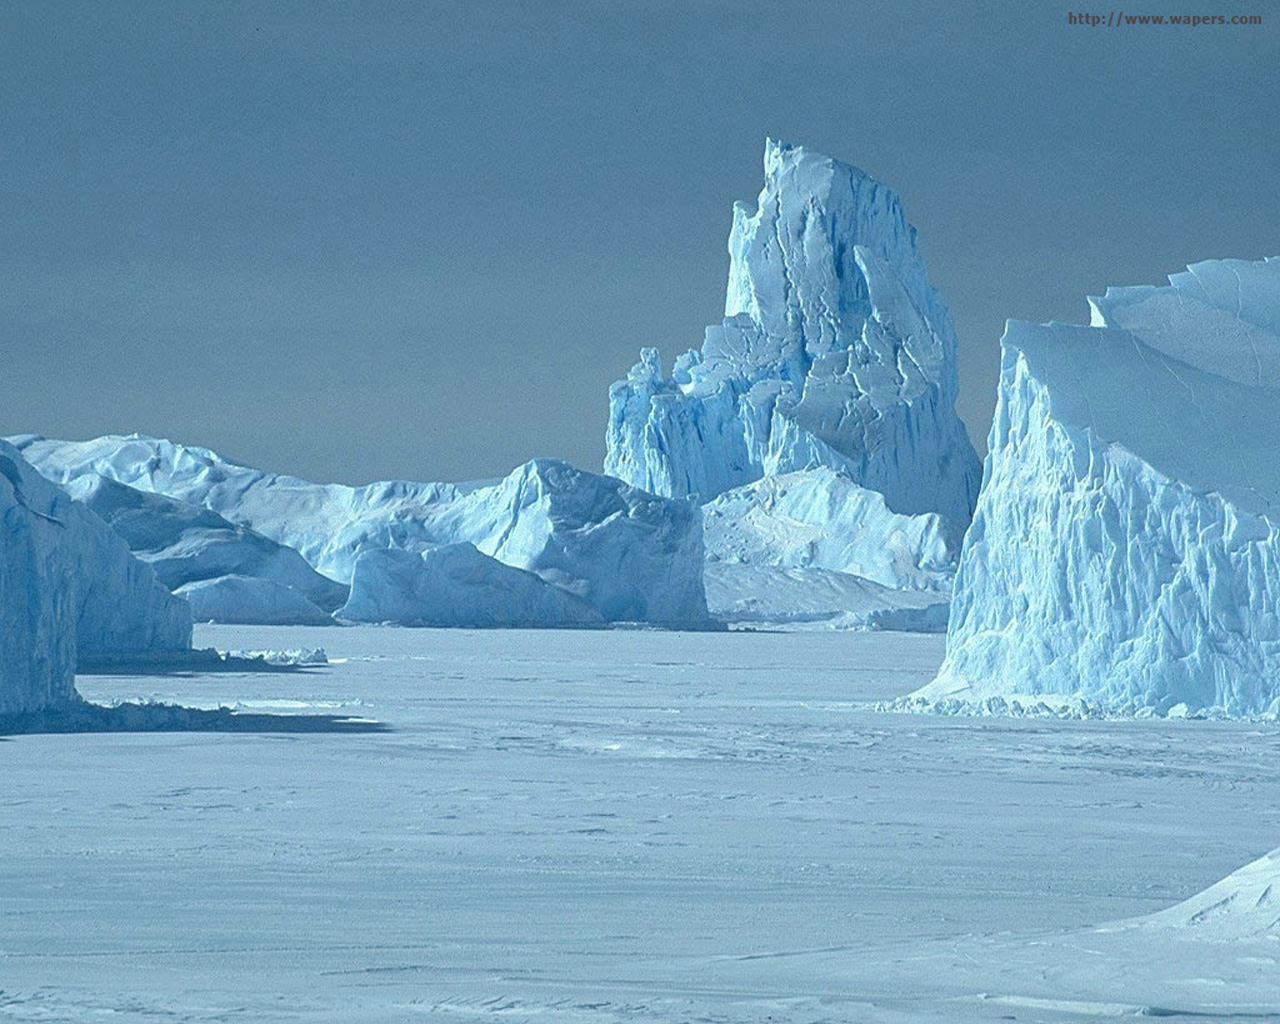 Advierten que hielo del Ártico podría desaparecer en 2015